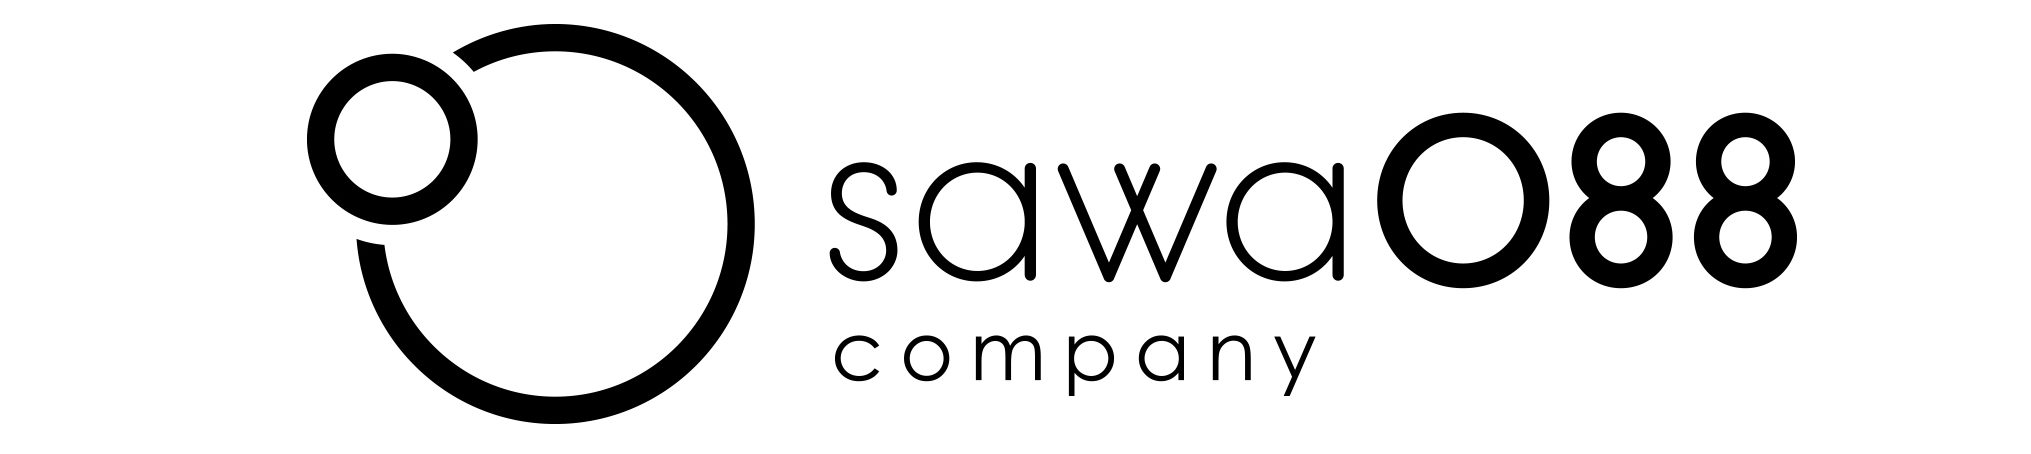 sawa088